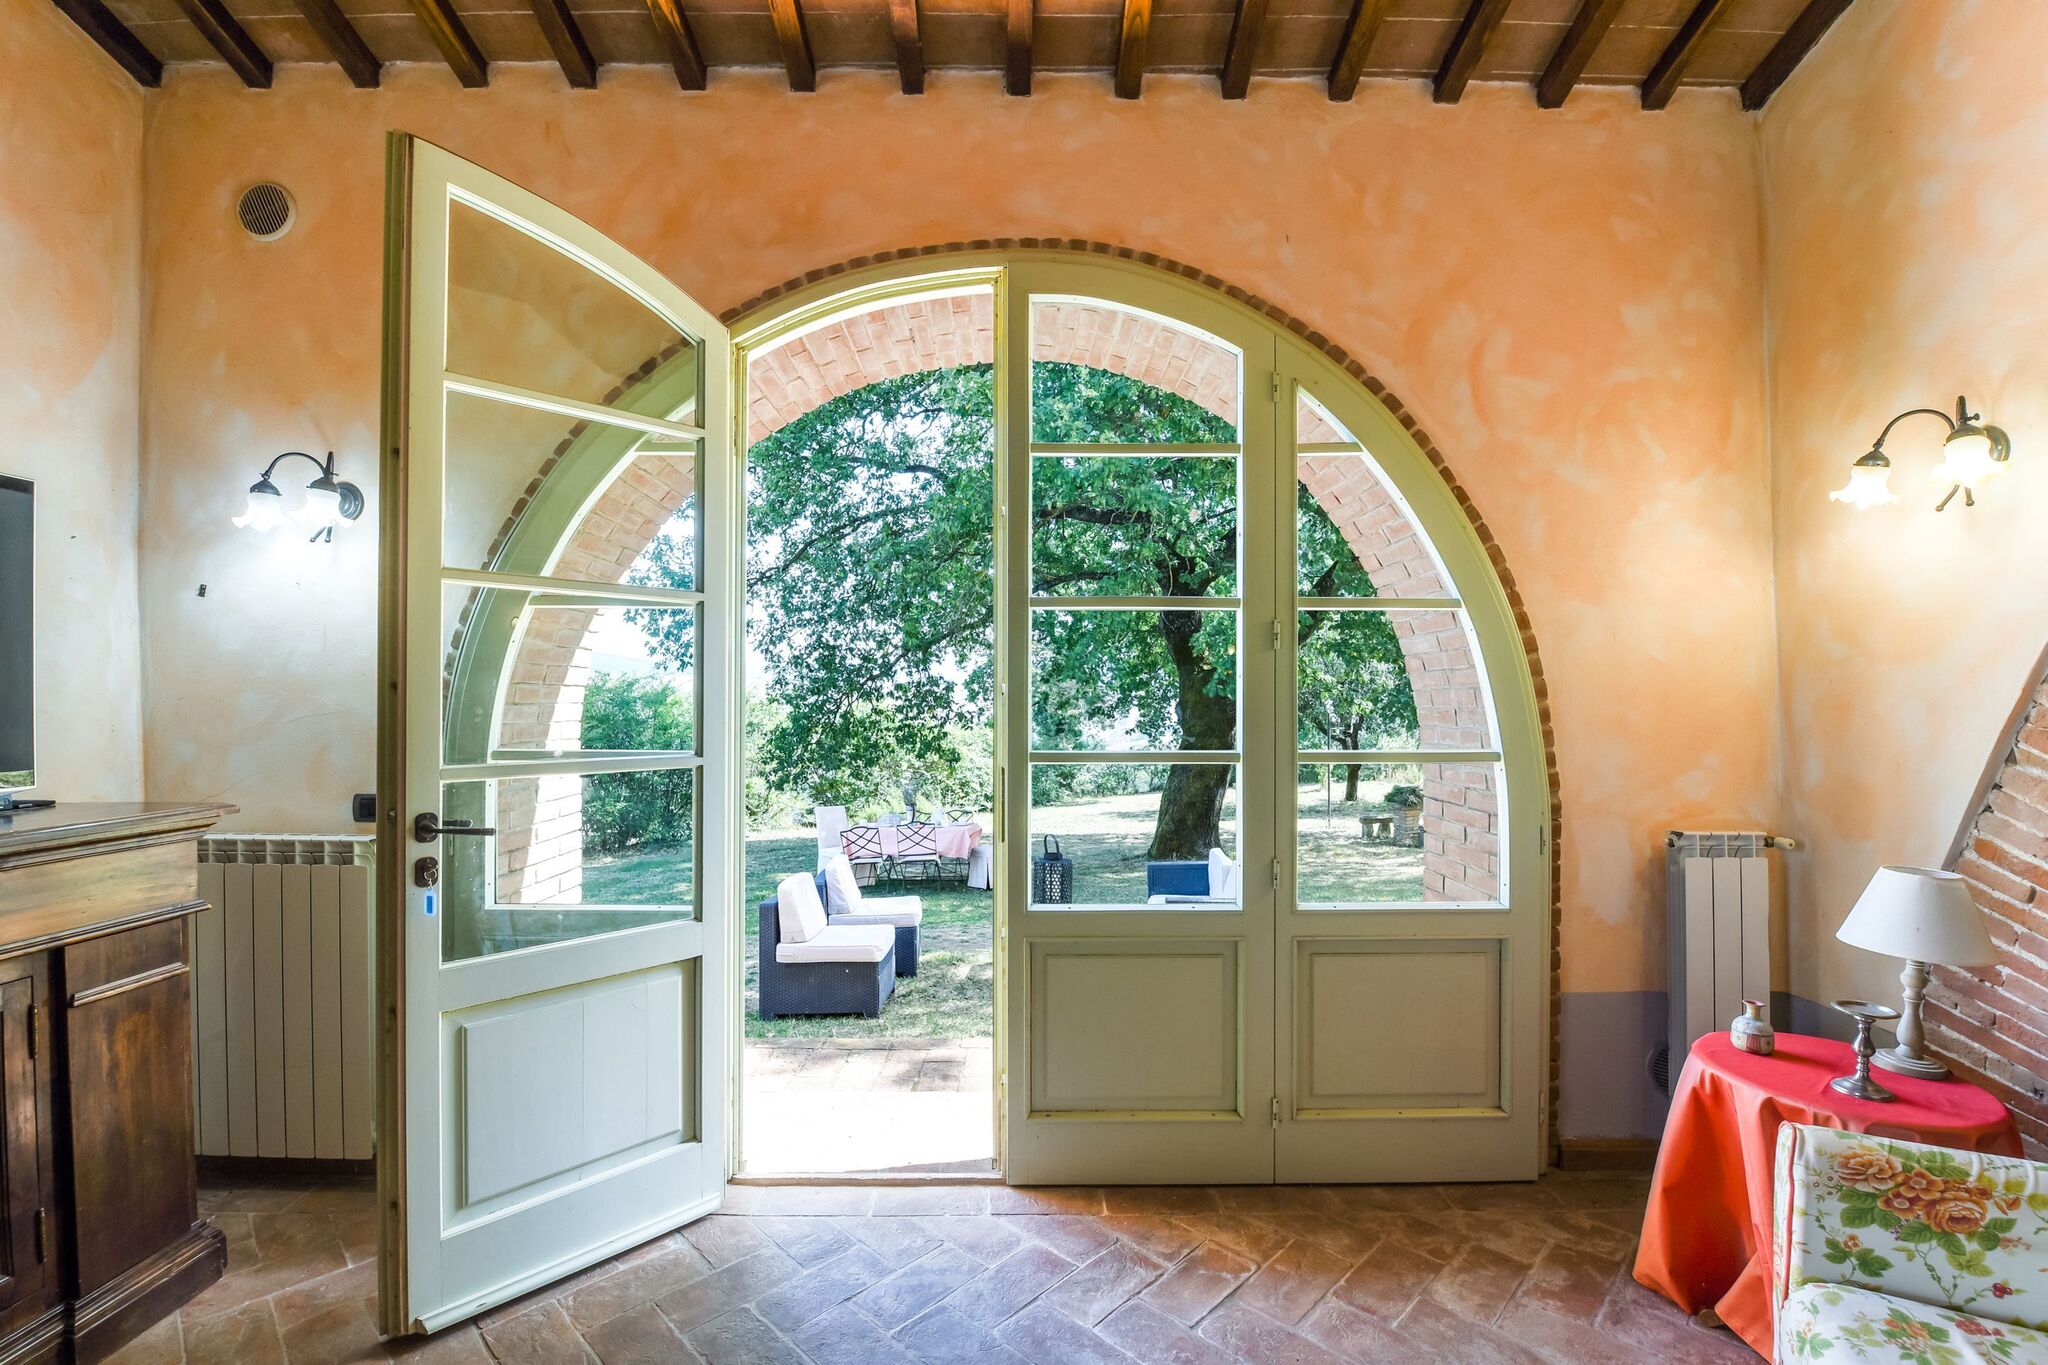 Belle maison de vacances près des sources chaudes de Toscane